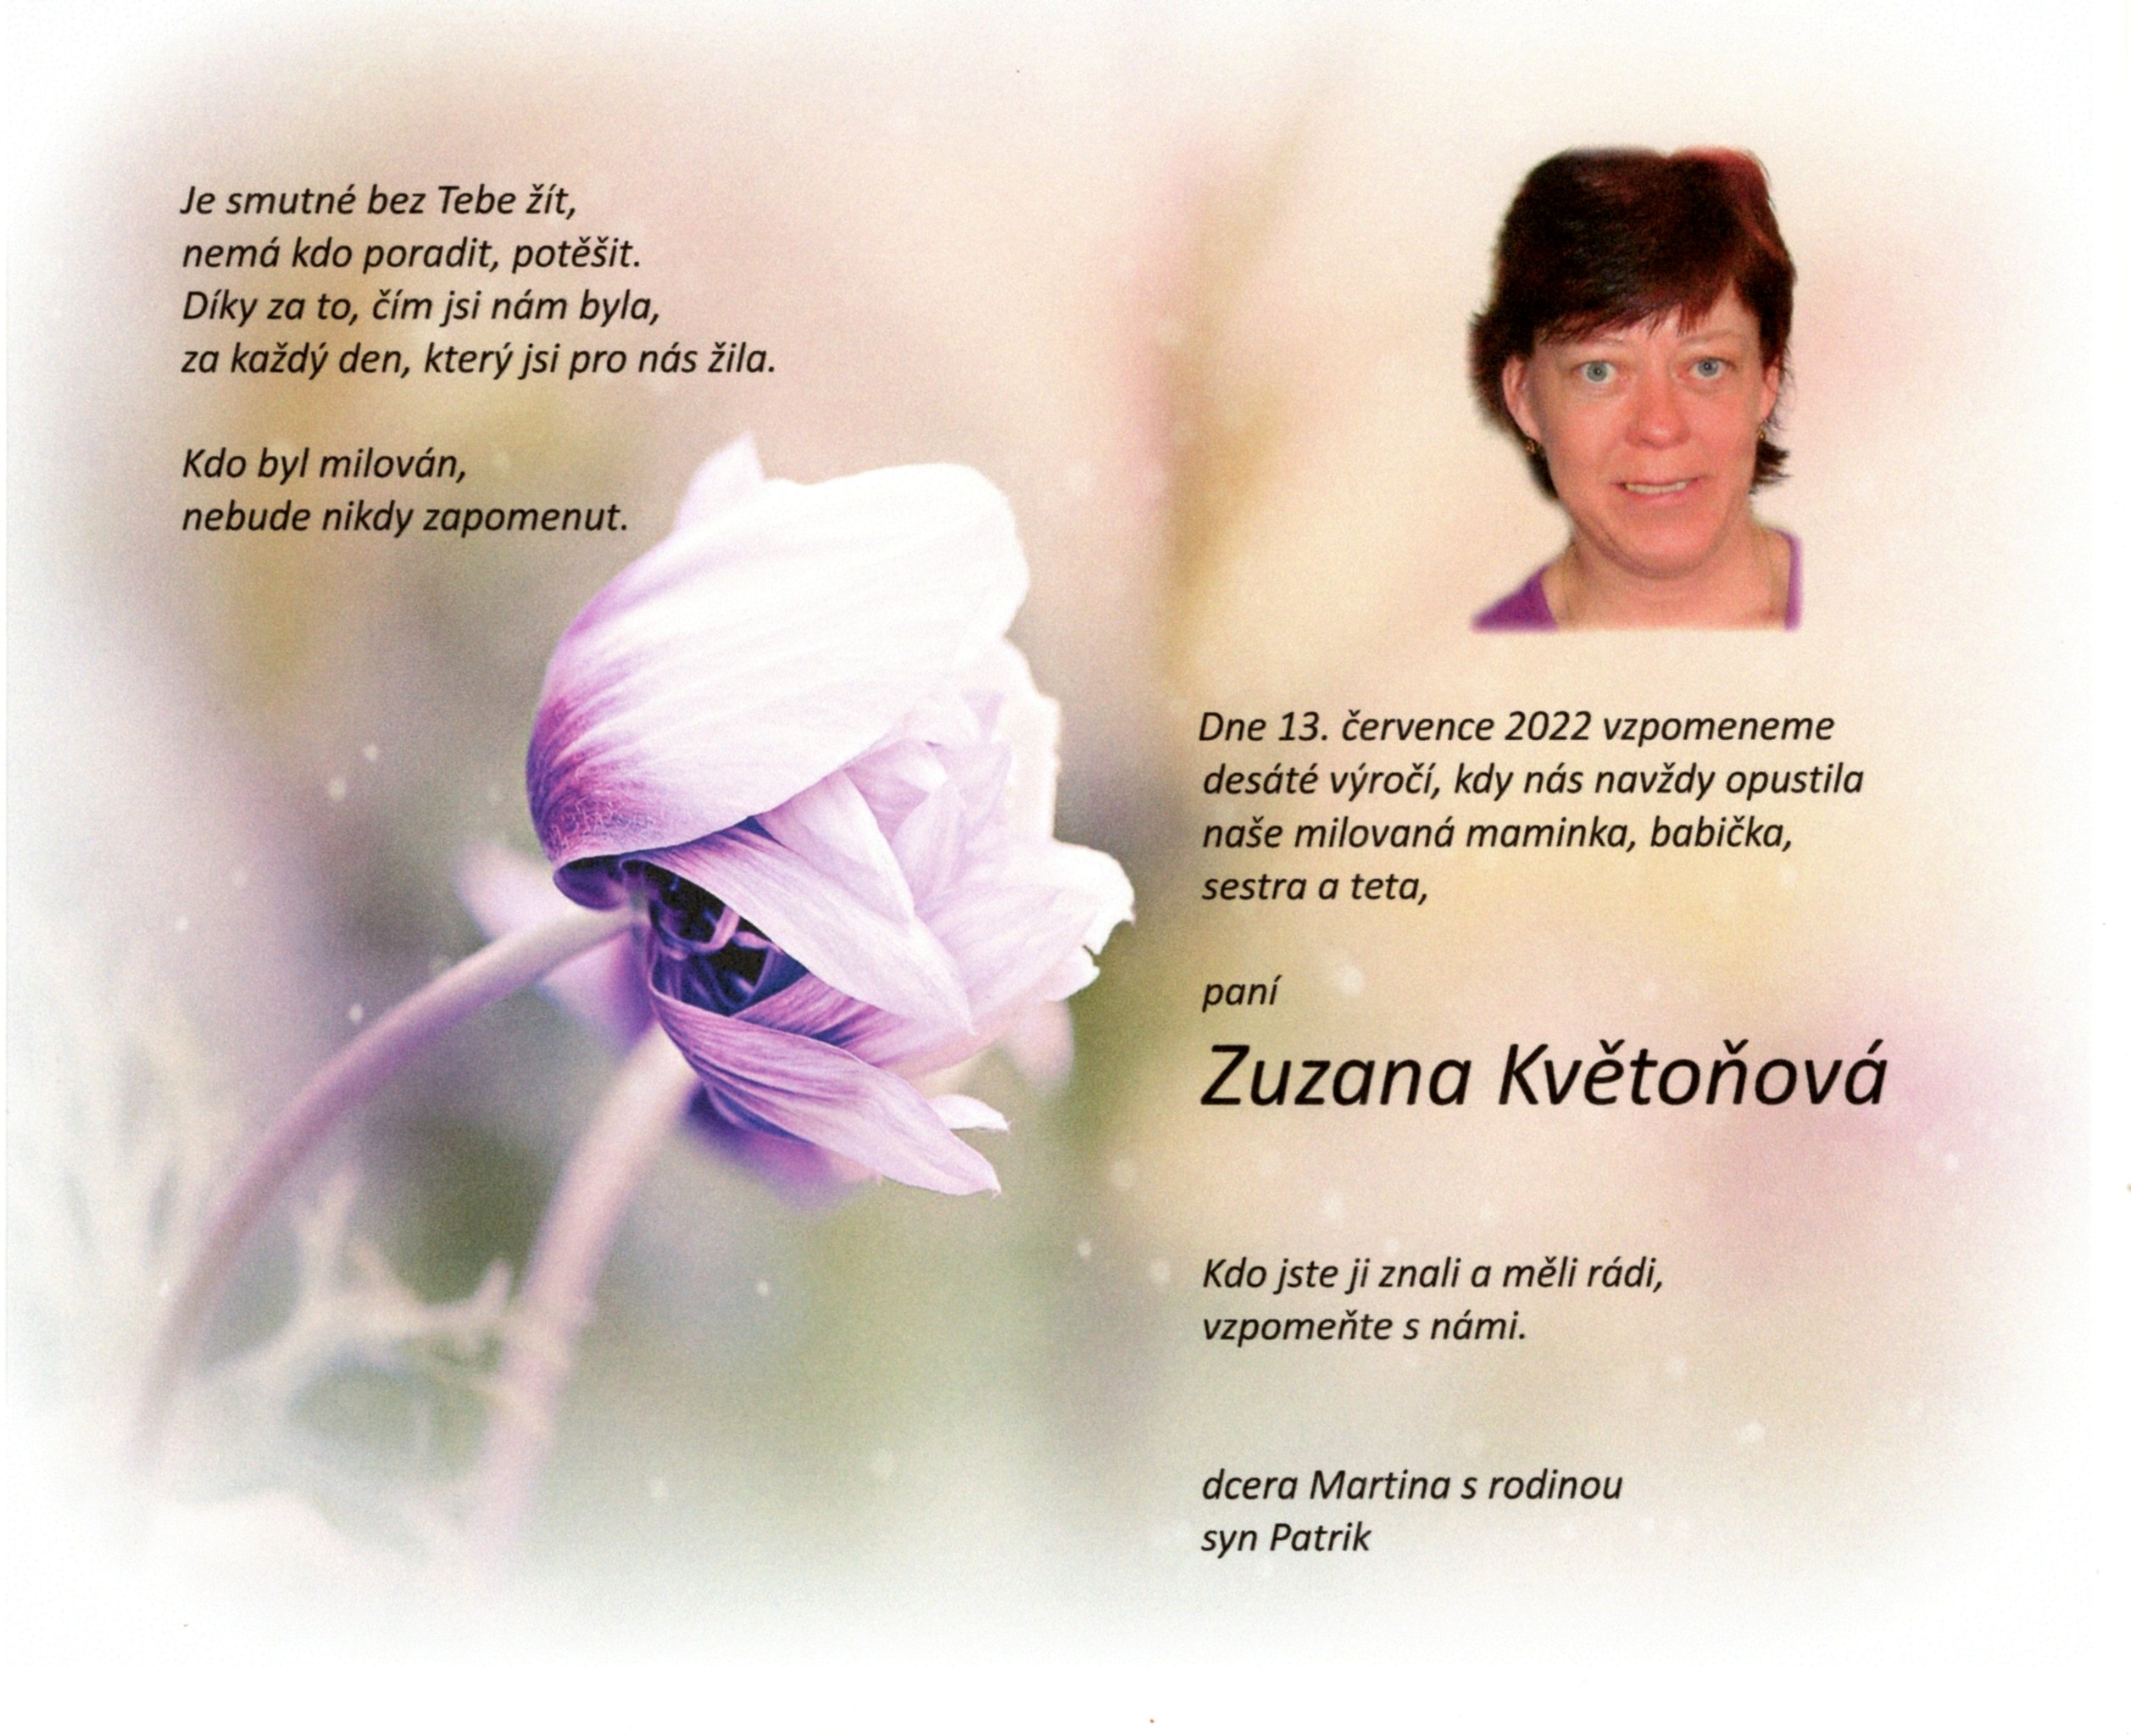 Zuzana Květoňová